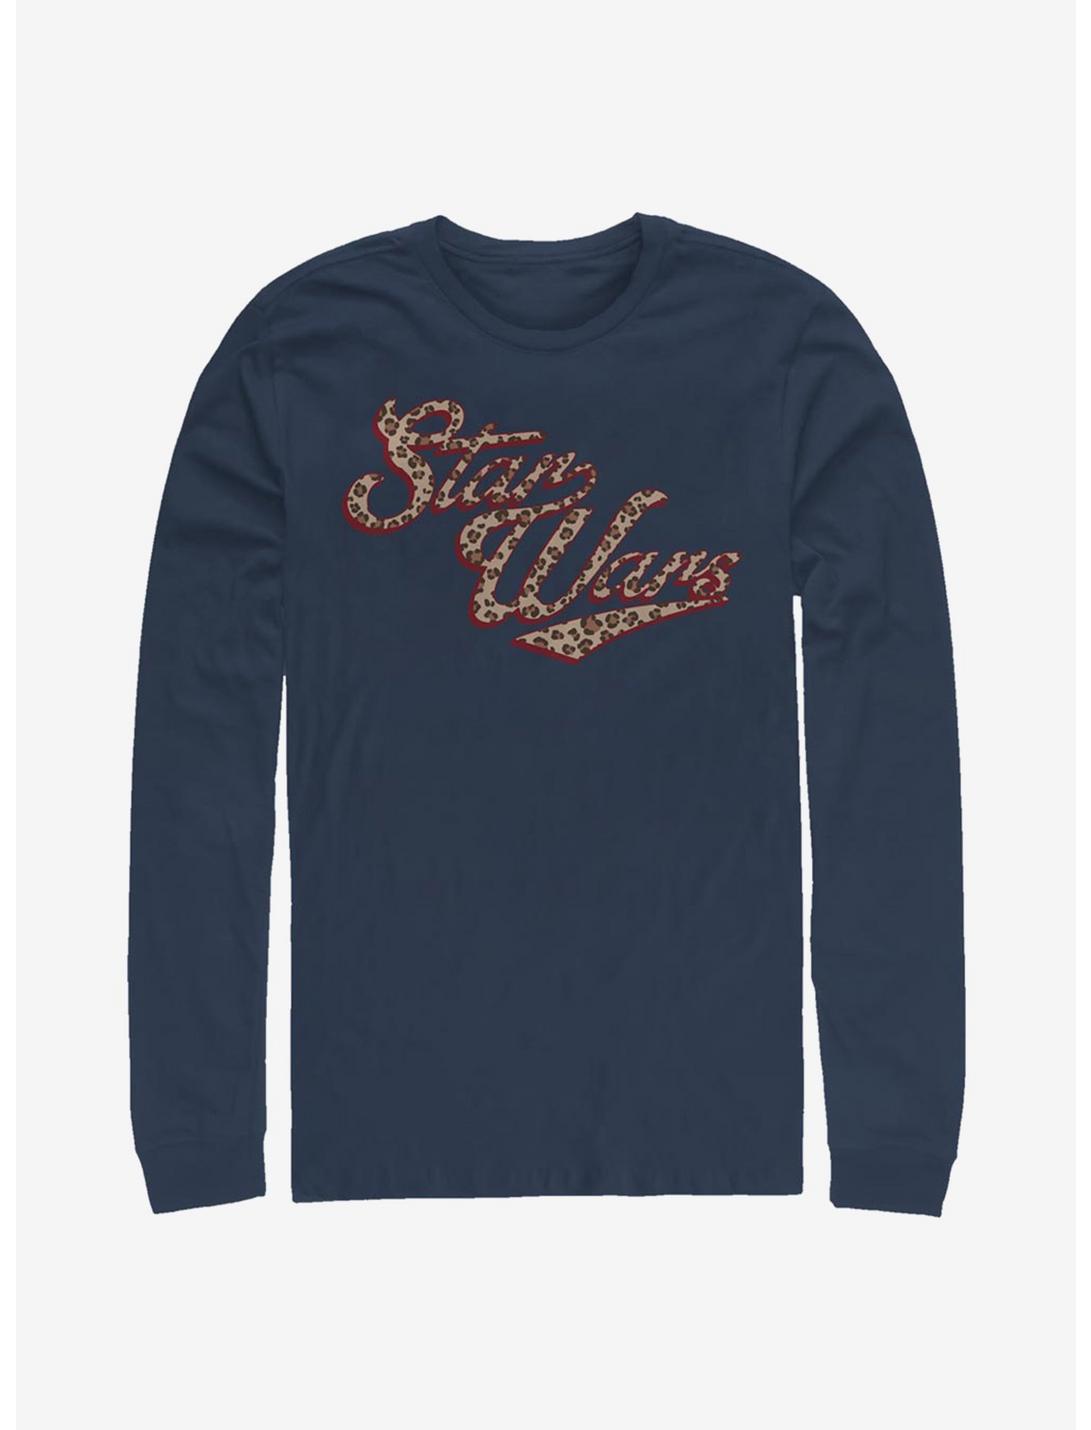 Star Wars Cheetah Long-Sleeve T-Shirt, NAVY, hi-res